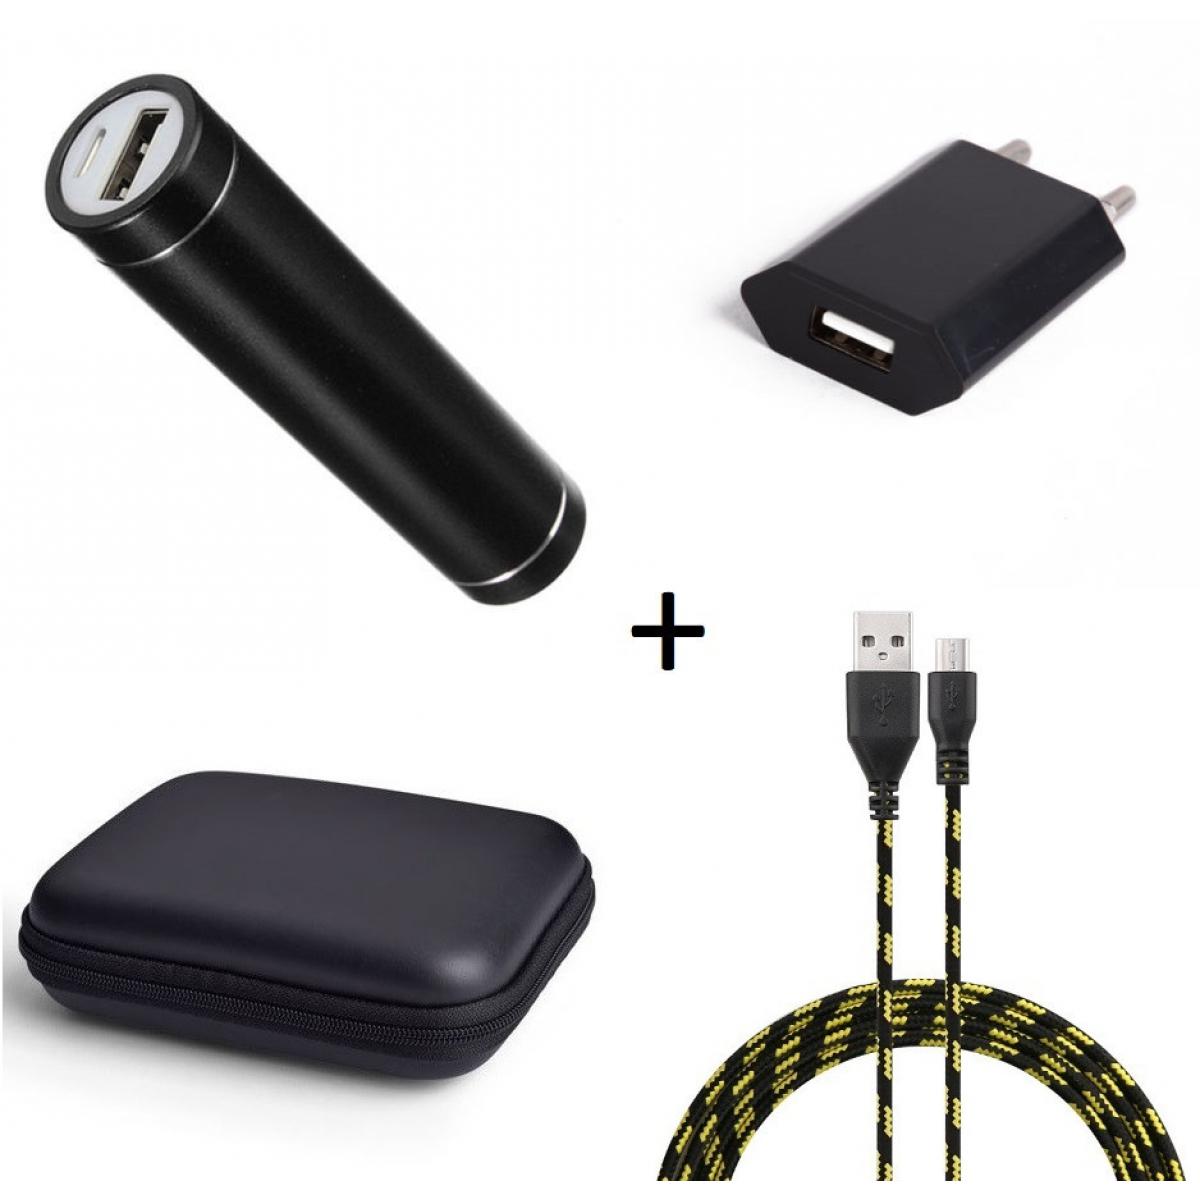 Shot - Pack pour GIONEE F9 (Cable Chargeur Micro USB Tresse 3m + Pochette + Batterie + Prise Secteur) Android (NOIR) - Chargeur secteur téléphone